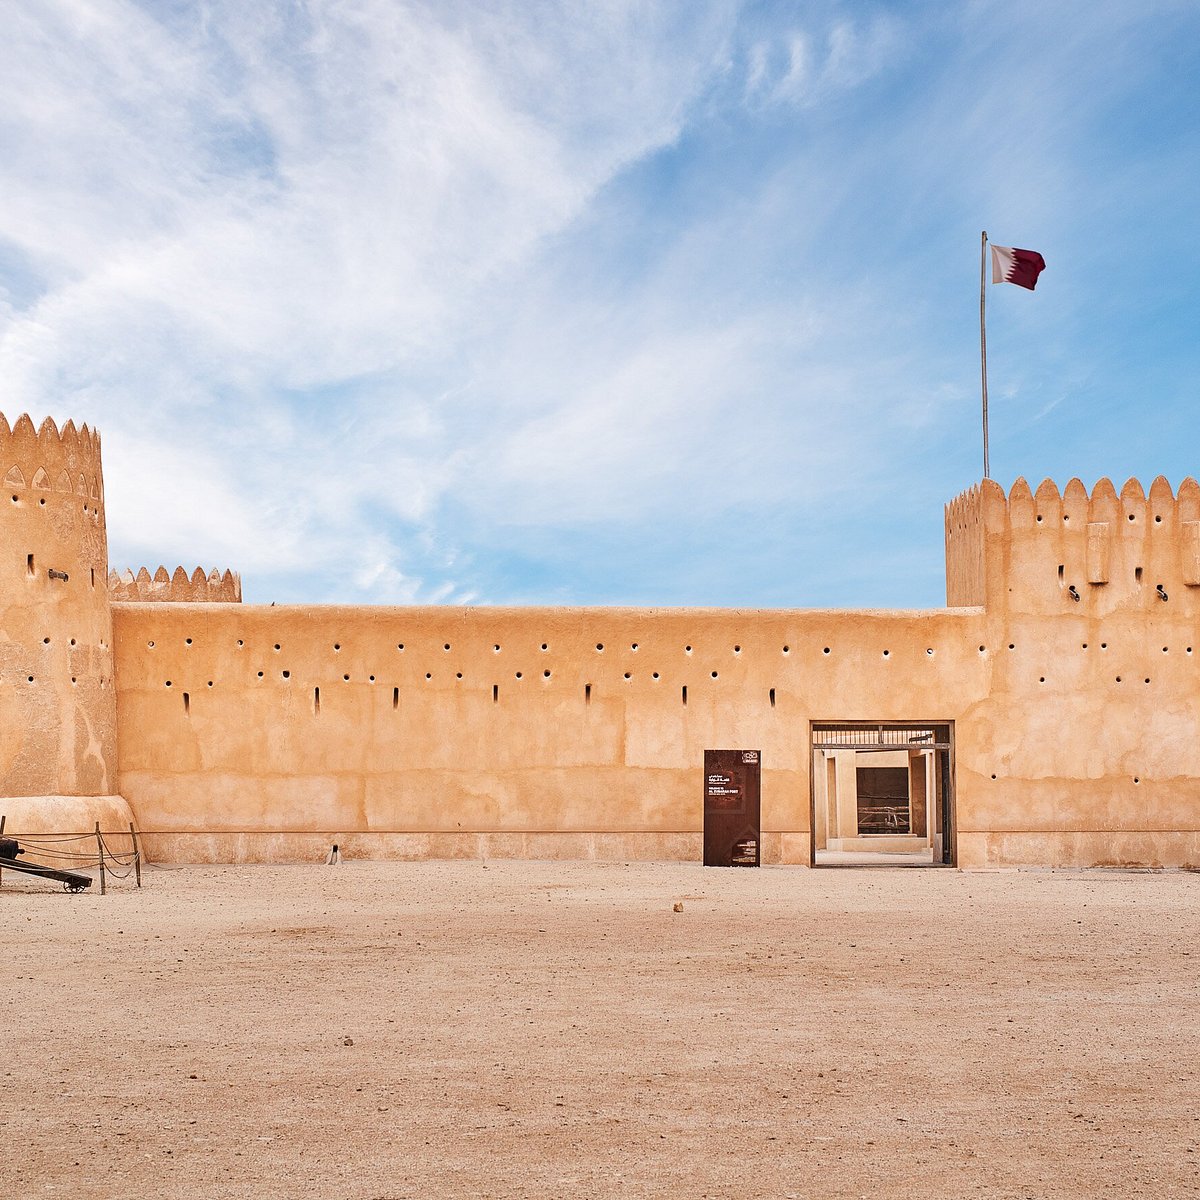 Al Zubara Fort (Madinat Ash Shamal, Qatar) là một trong những điểm đến không thể bỏ qua khi đến thăm Qatar. Lâu đài Al Zubara được xây dựng vào thế kỷ 18 và hiện đang được bảo tồn tốt. Từ đây, du khách có thể chiêm ngưỡng vẻ đẹp của thành phố cổ Madinat Ash Shamal. Xem ảnh đẹp về lâu đài và đánh giá của chúng tôi để biết thêm chi tiết!